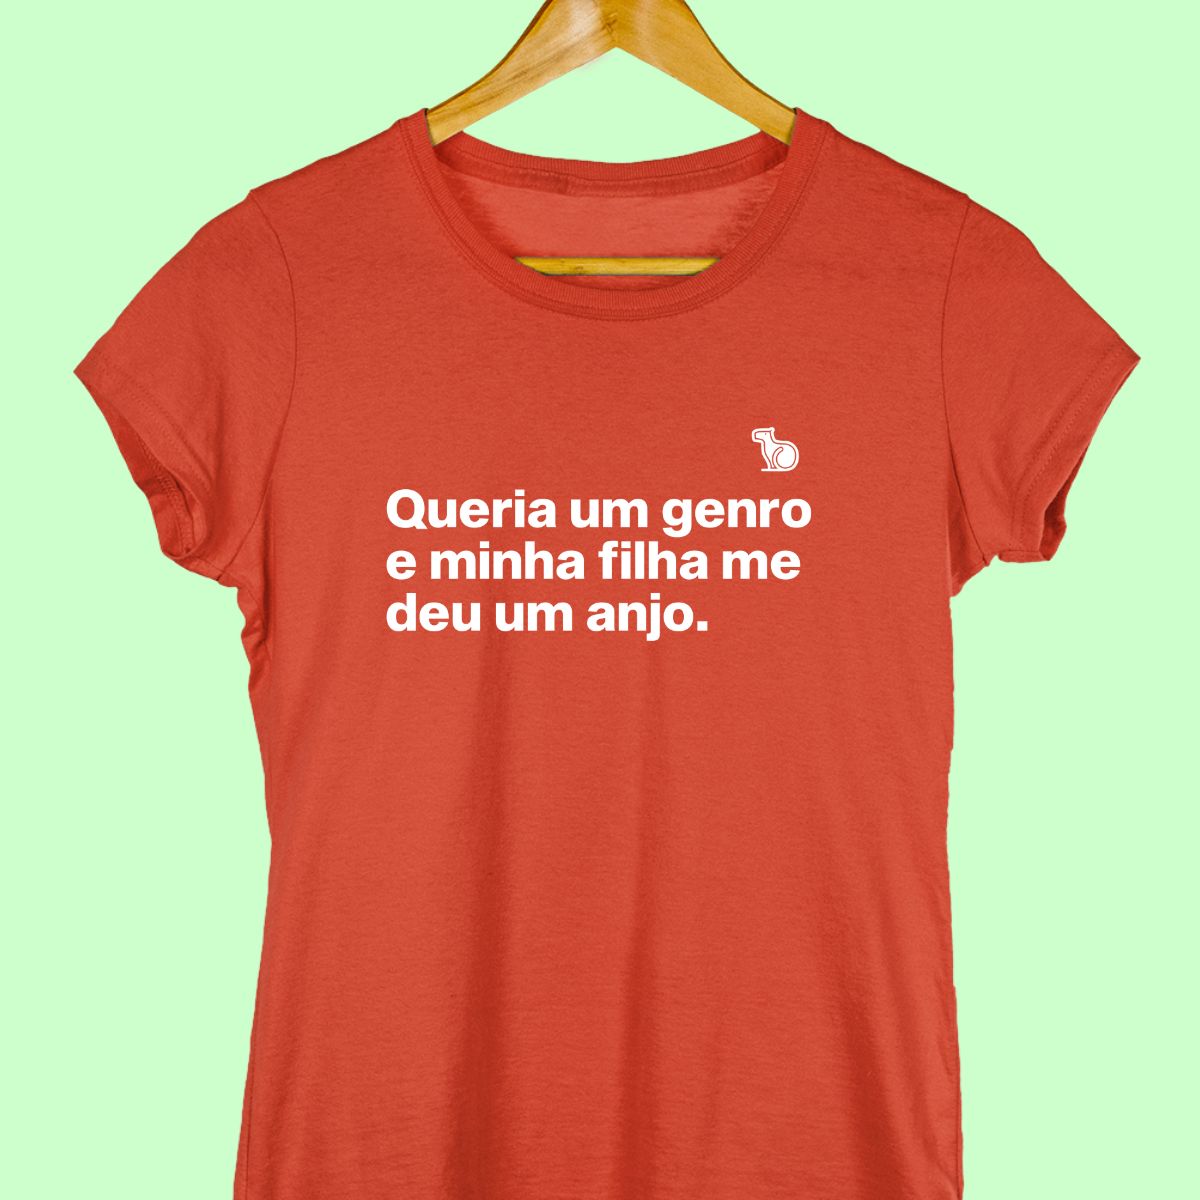 Camiseta com a frase "Queria um genro e minha filha me deu um anjo." feminina vermelha.